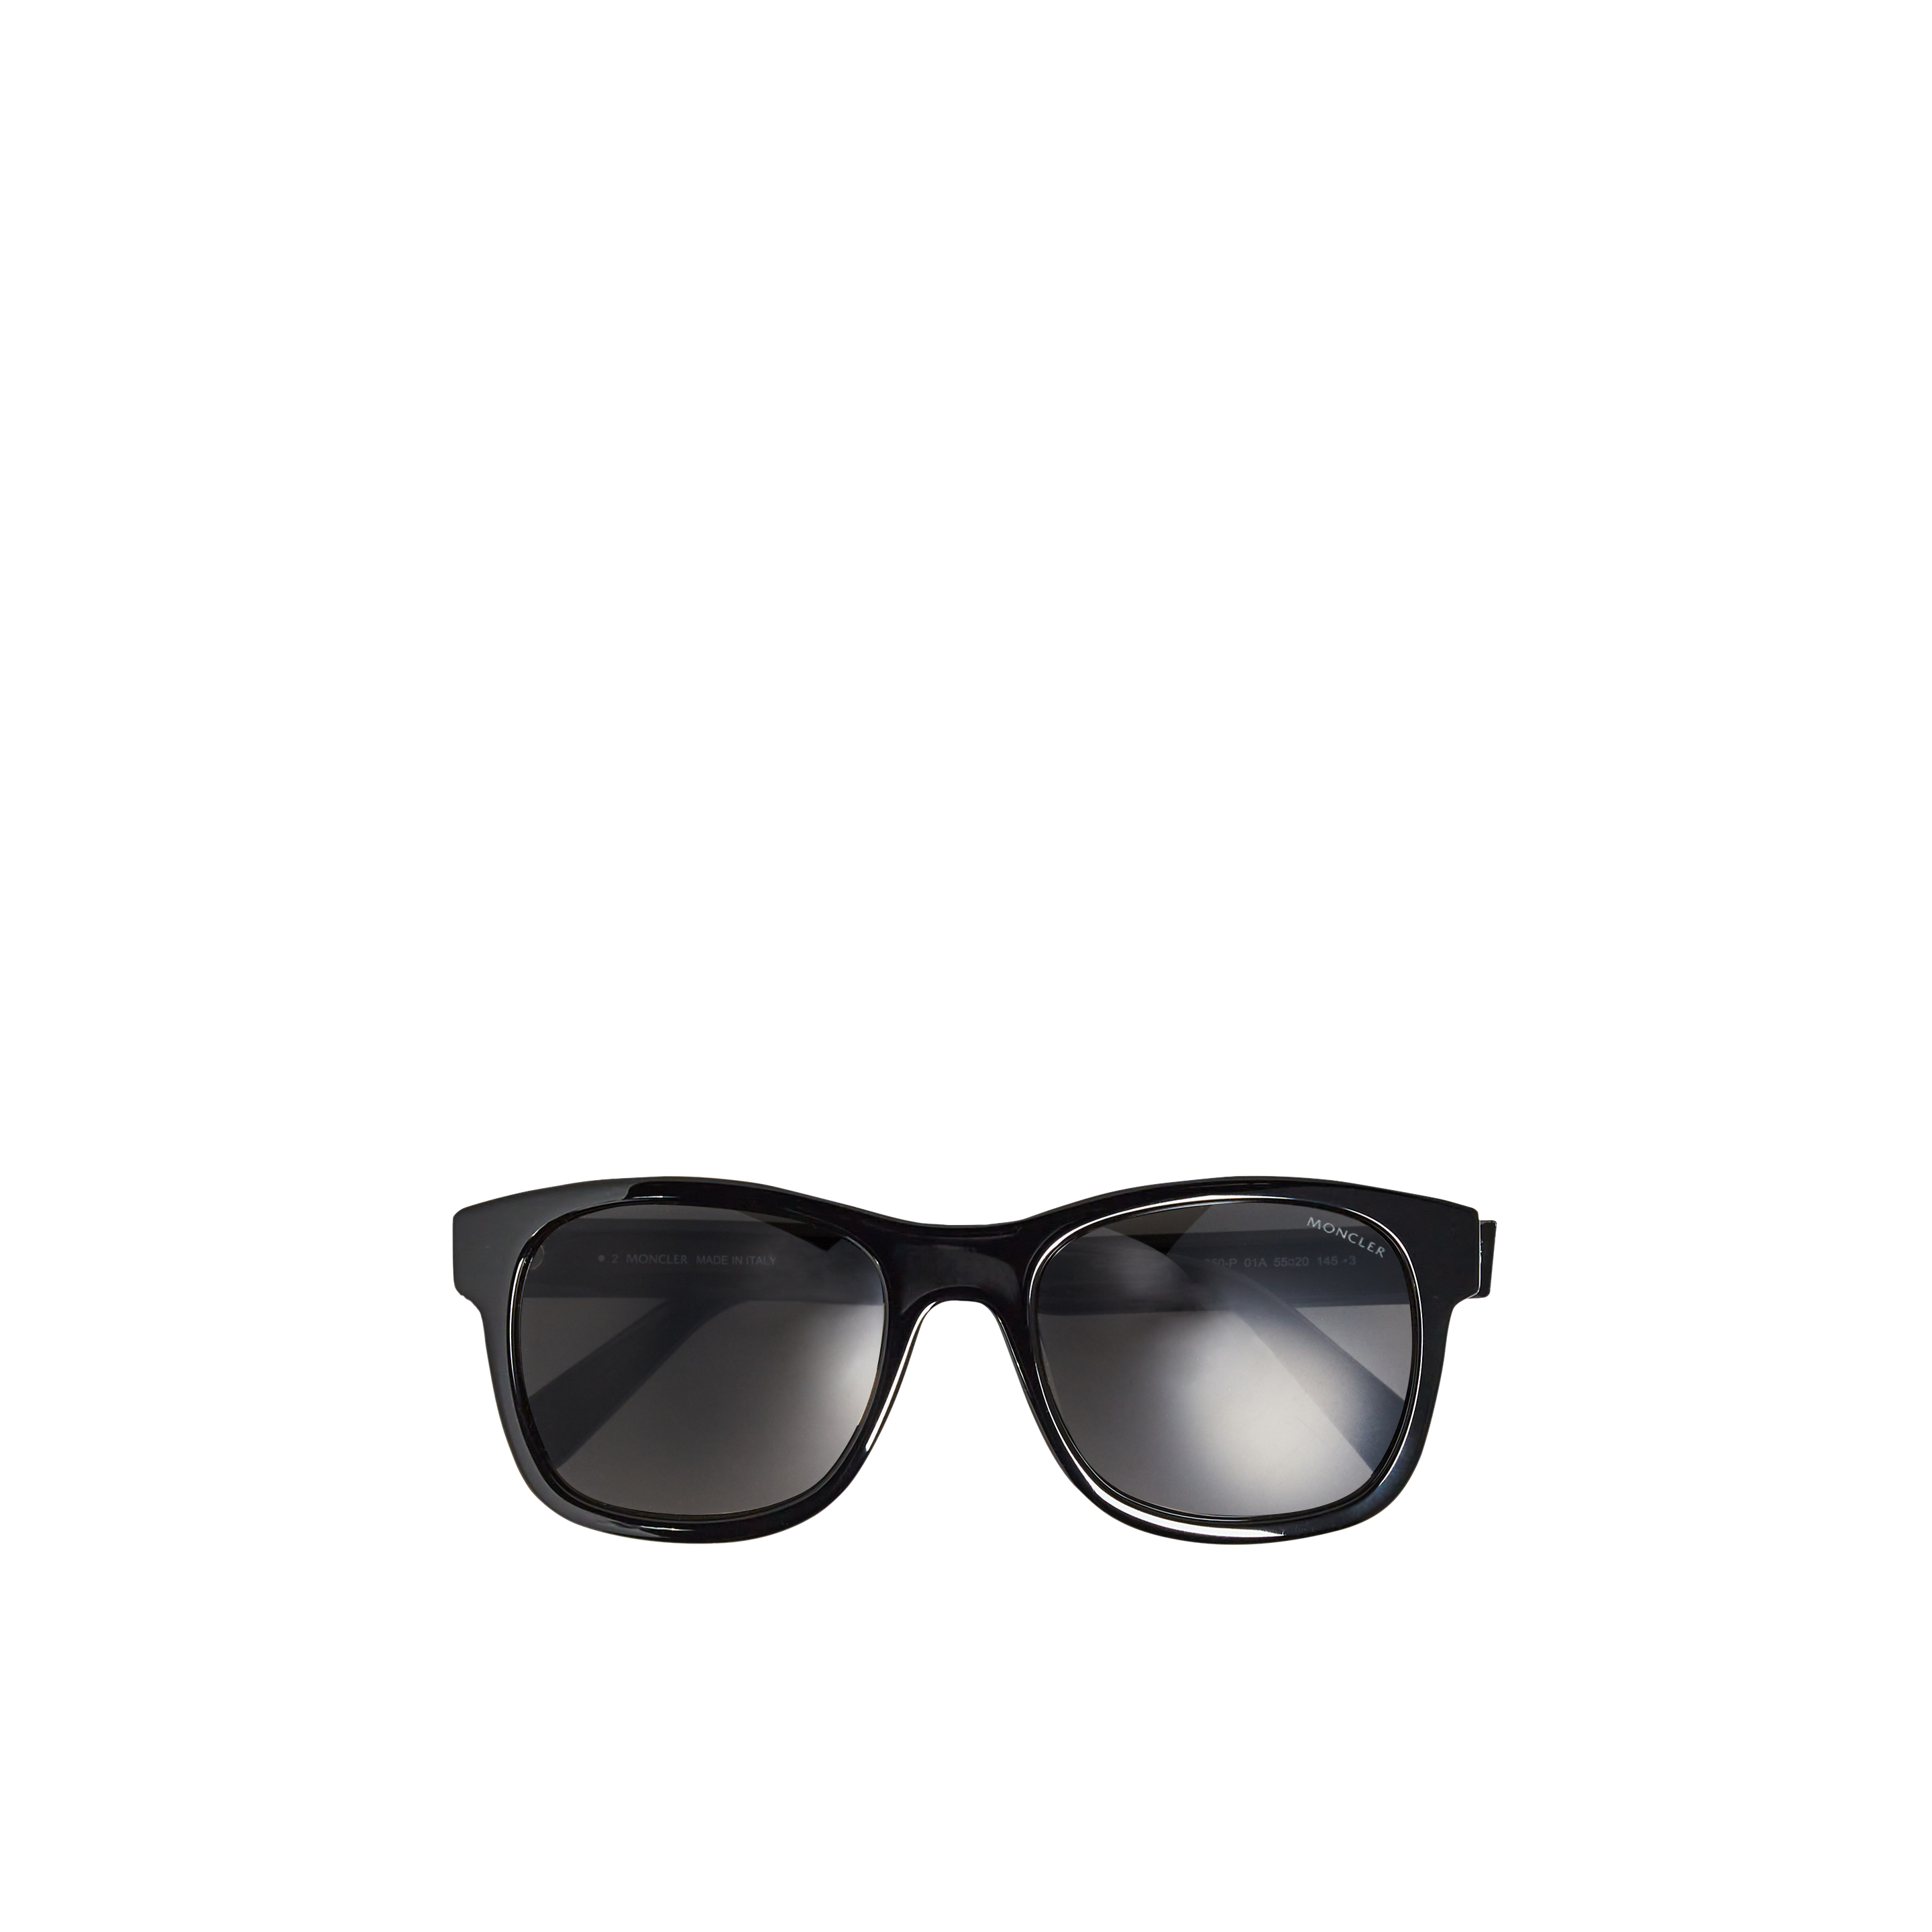 Moncler Genius 7 Moncler Frgmt Squared Sunglasses